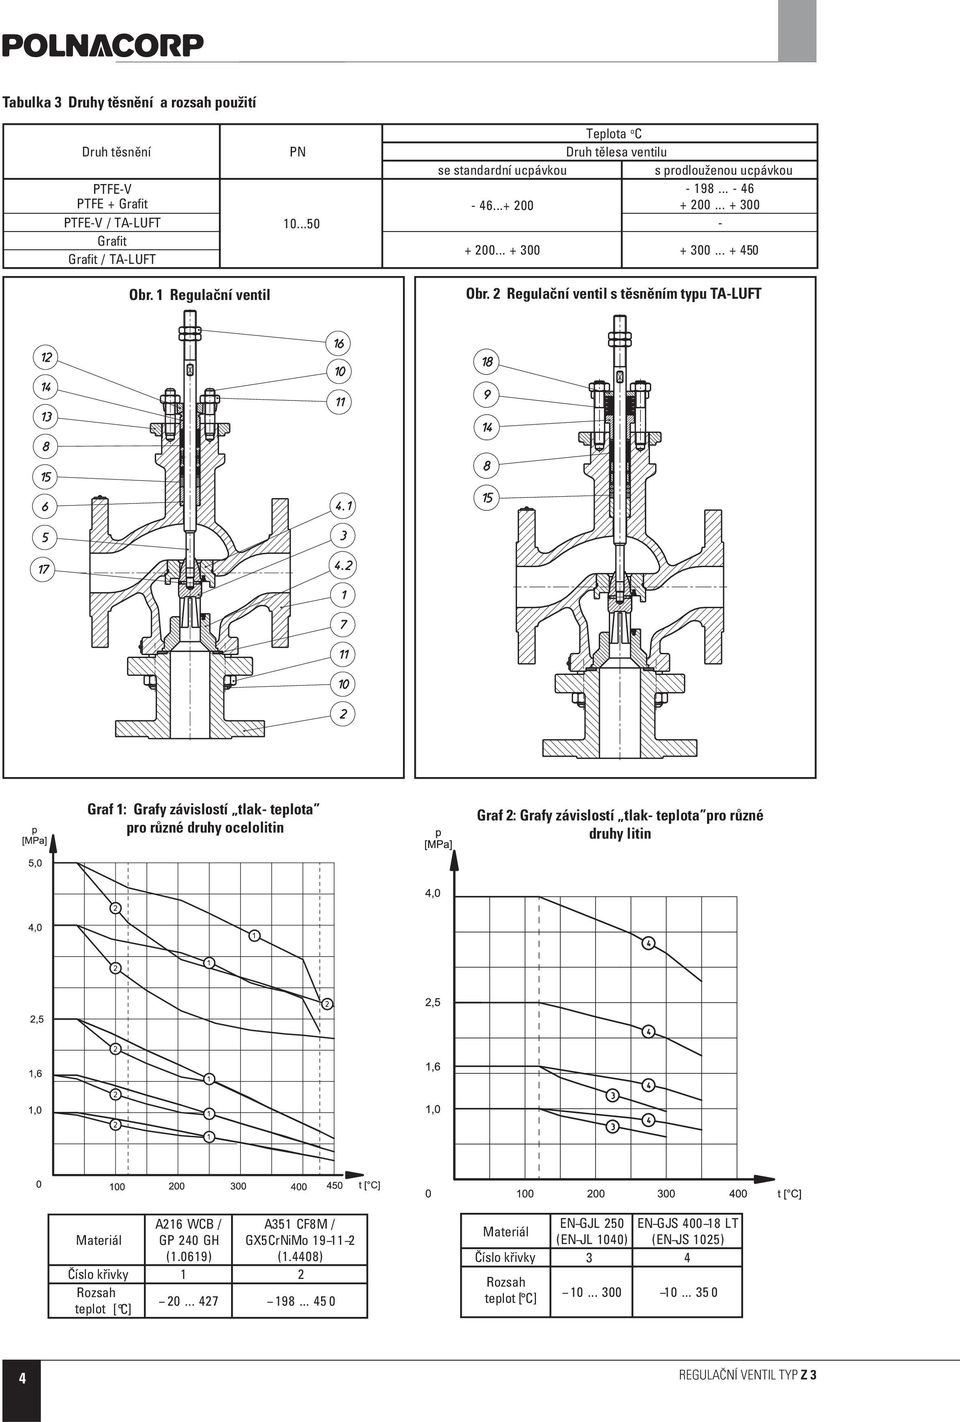 Regulační ventil s těsněním typu TA-LUFT Graf 1: Grafy závislostí tlak- teplota pro různé druhy ocelolitin Graf : Grafy závislostí tlak- teplota pro různé druhy litin